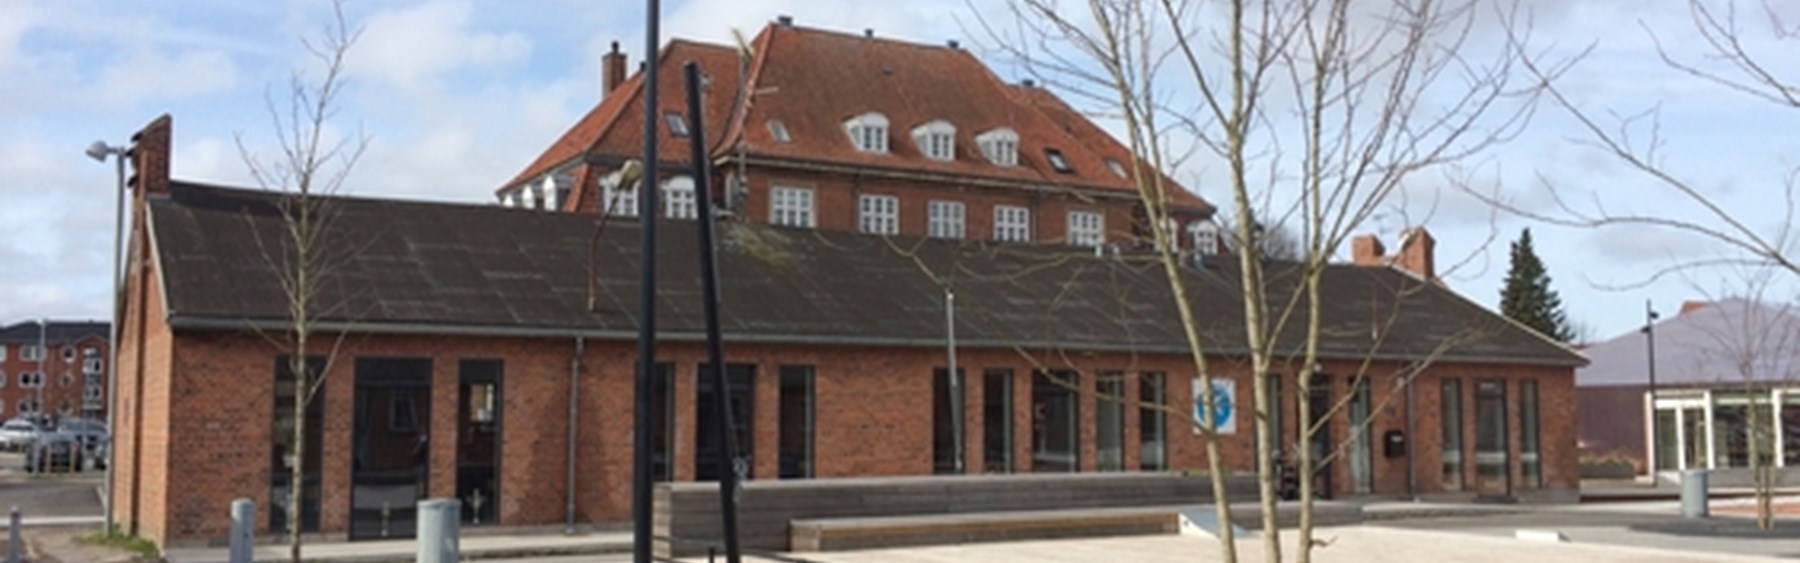 Håndboldklubben Roars facade med nye høje vinduer mod dansepladsen